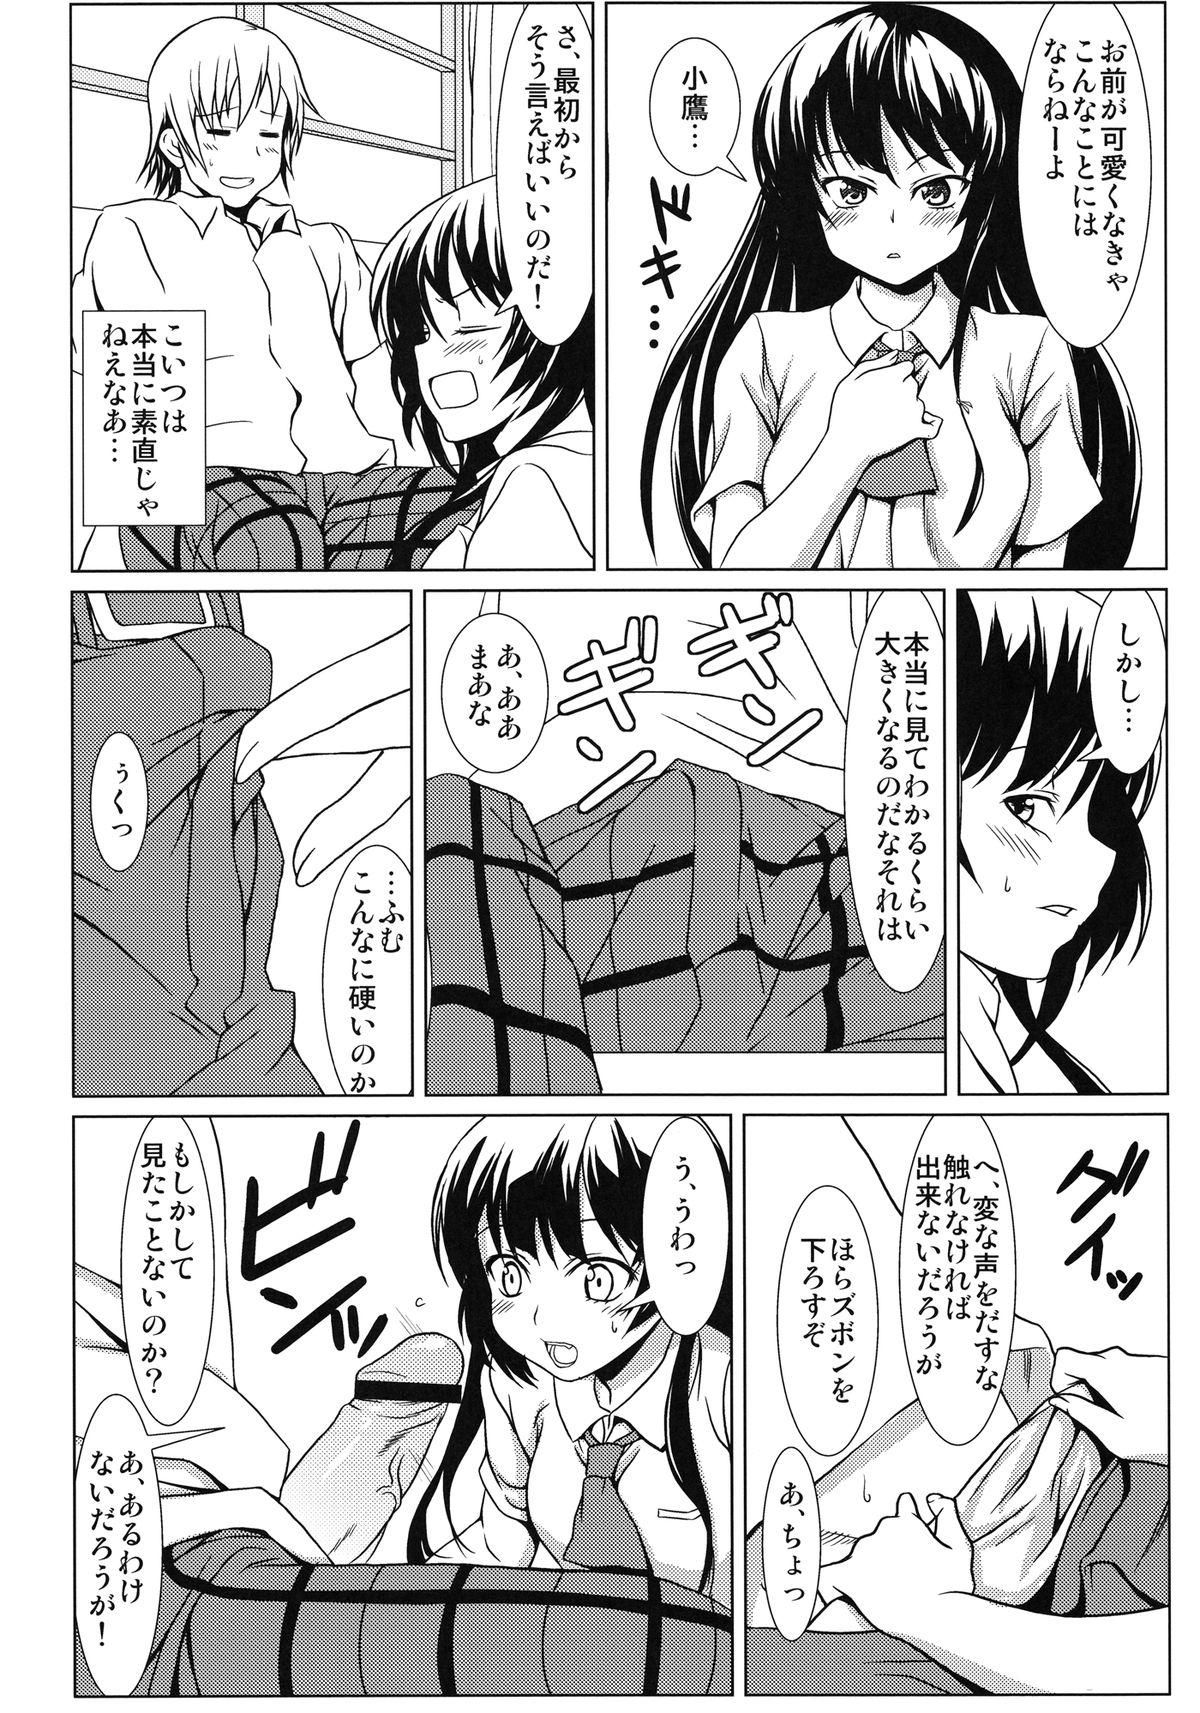 Reverse Cowgirl Yozora no Mukou - Boku wa tomodachi ga sukunai Asian Babes - Page 8